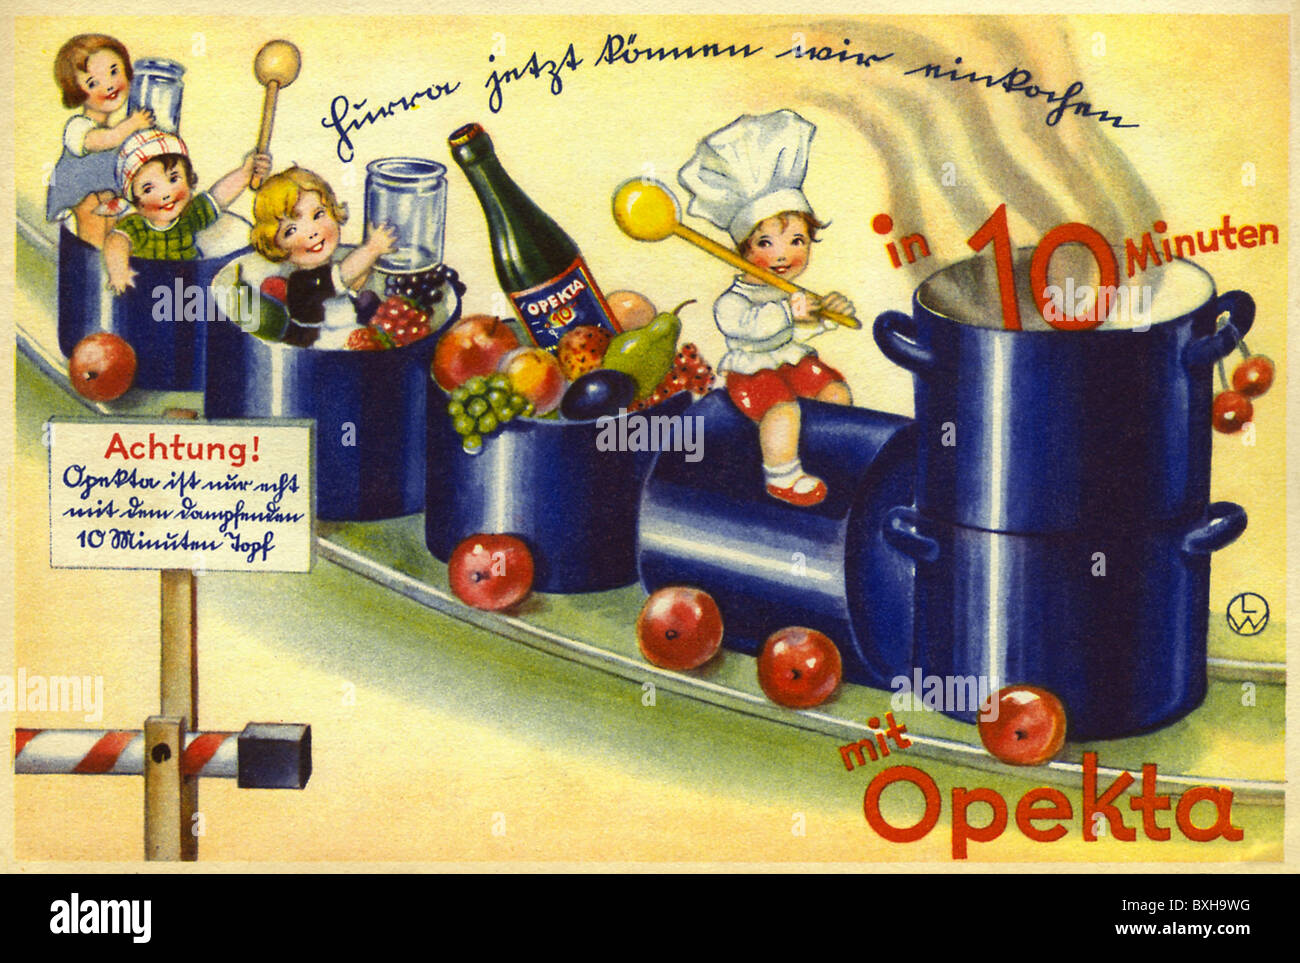 Werbung, Lebensmittel, Konservierungsmittel Opekta, Kinder kochend auf einem Topfzug, Deutschland, um 1930, Zusatzrechte-Clearences-nicht vorhanden Stockfoto